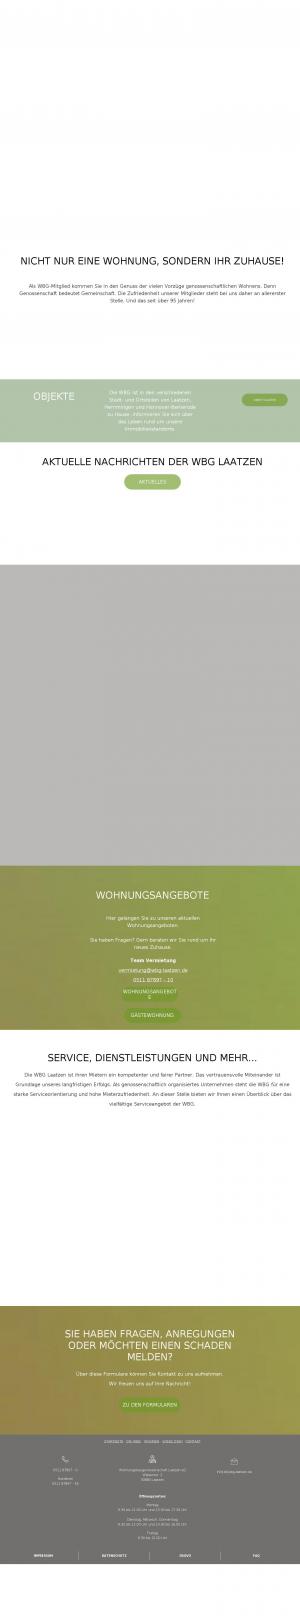 www.wbg-laatzen.de